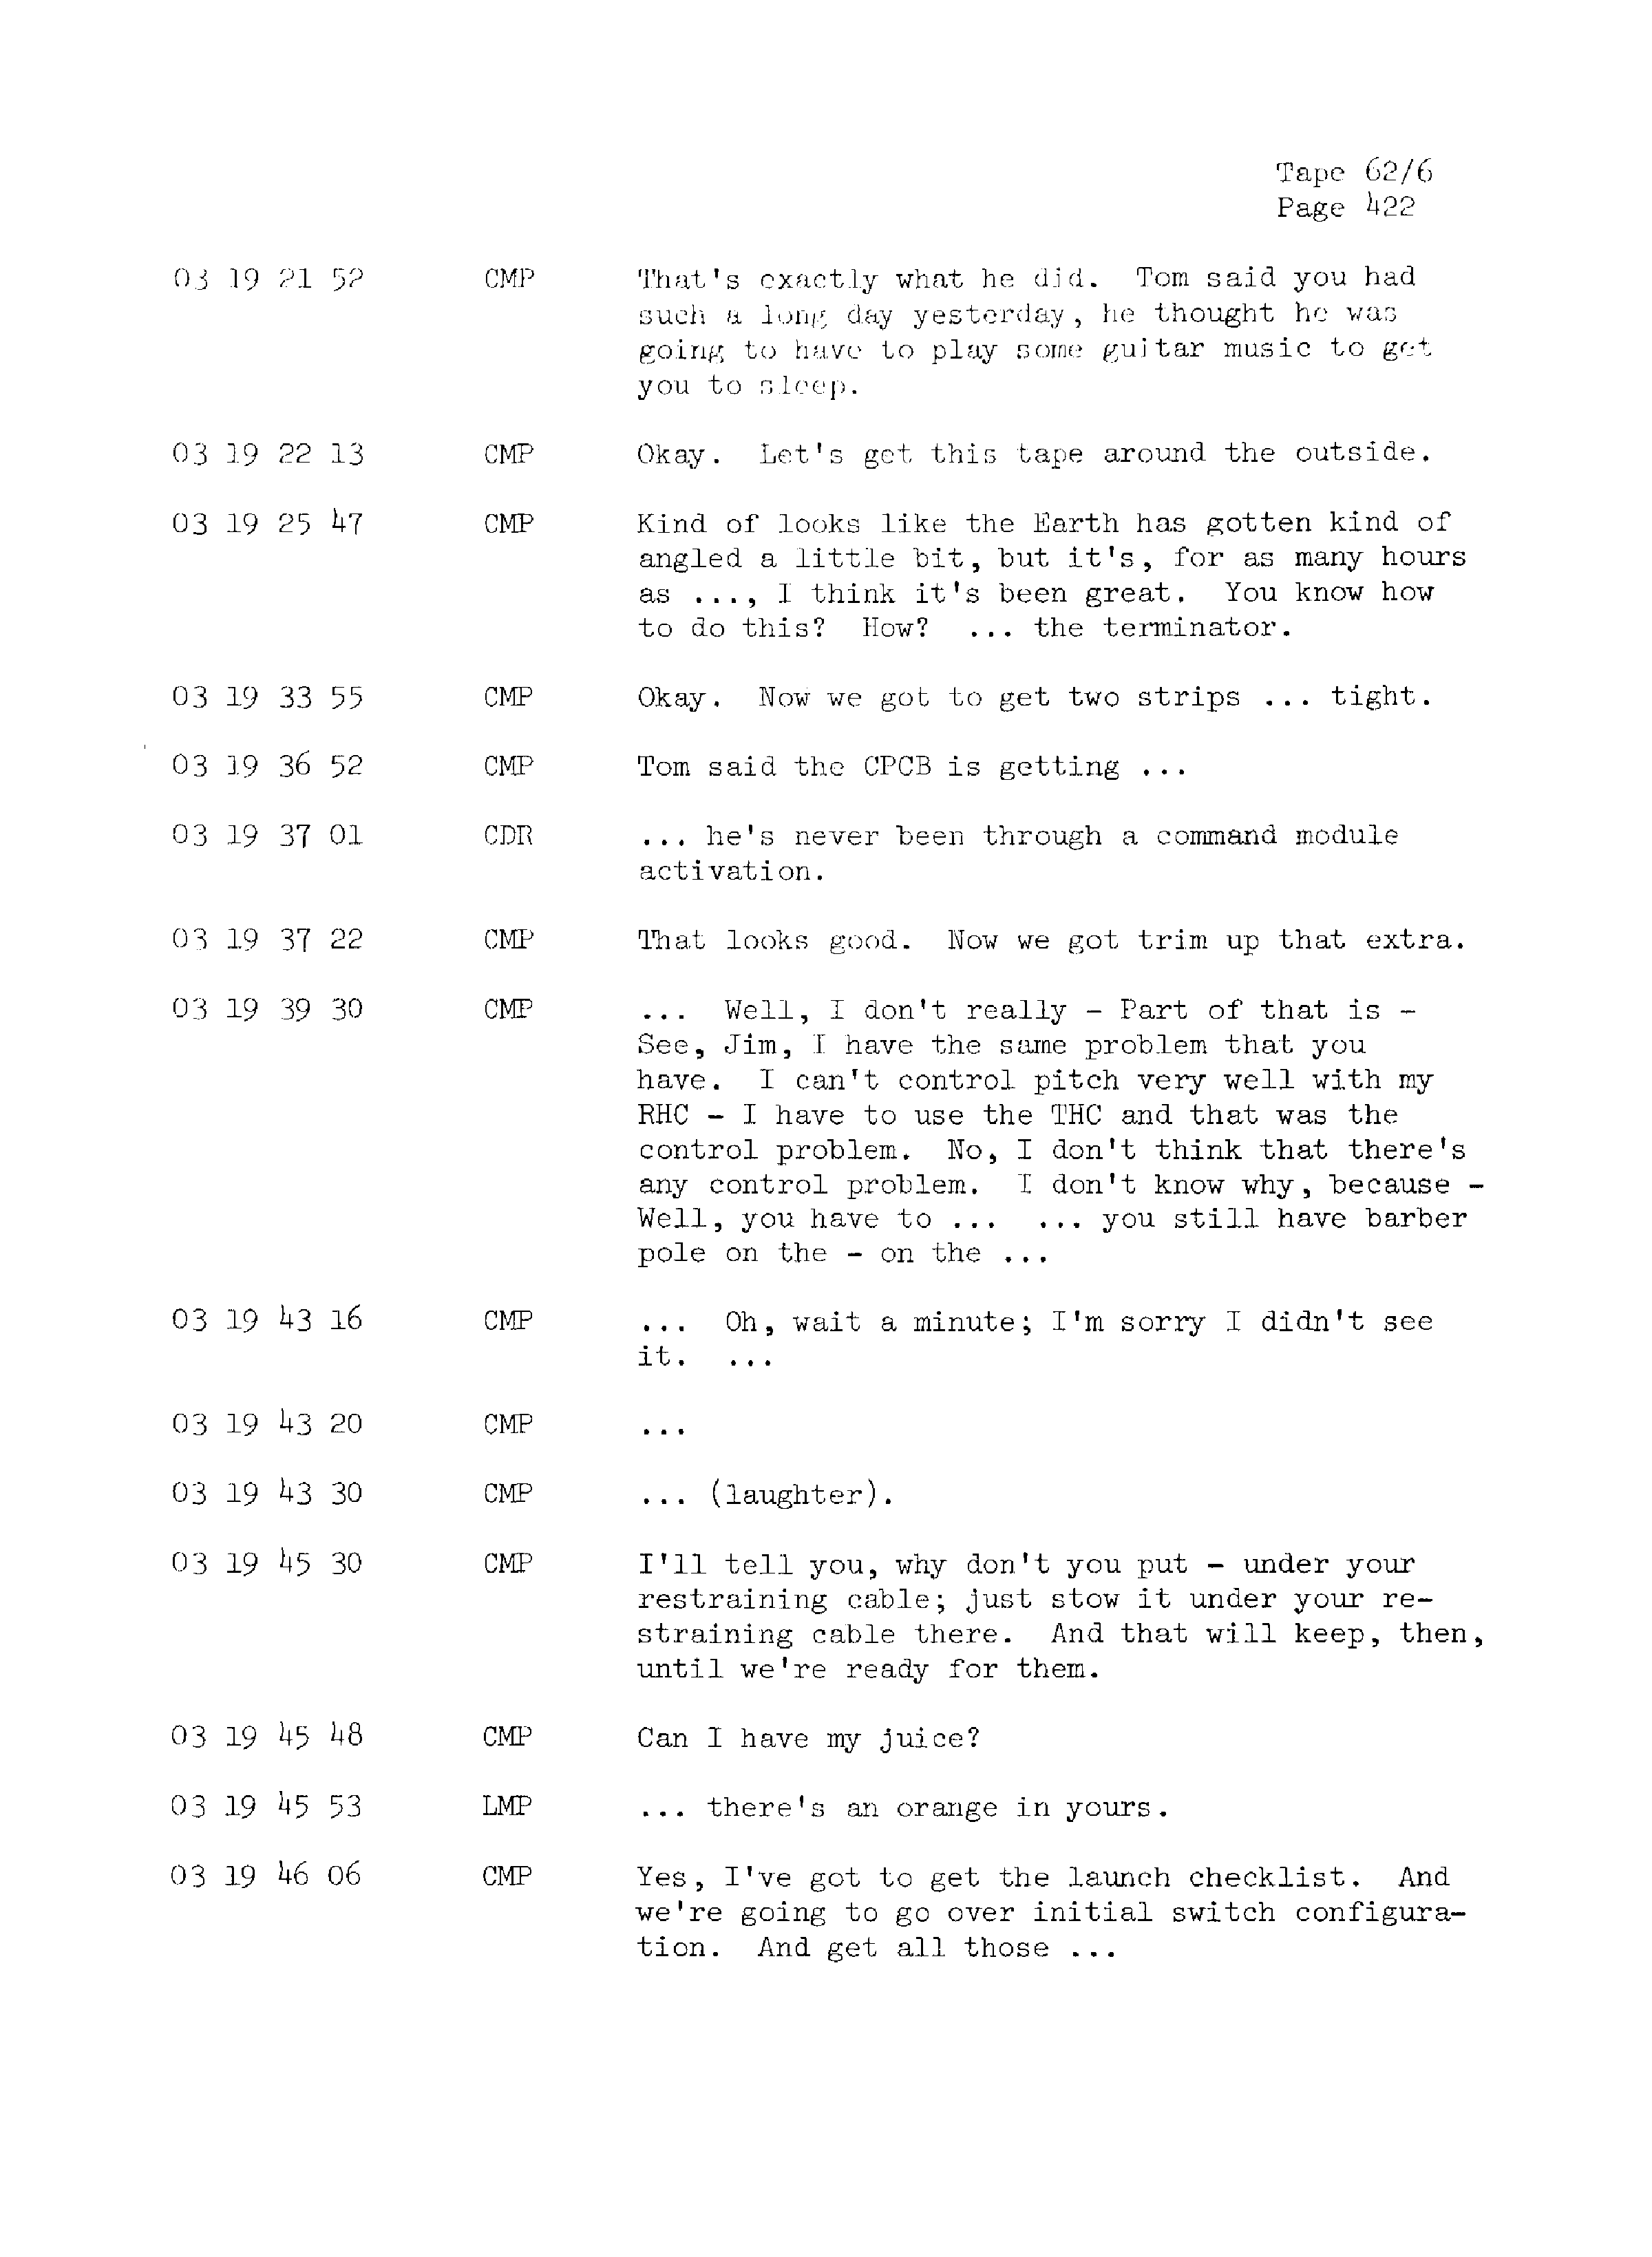 Page 429 of Apollo 13’s original transcript